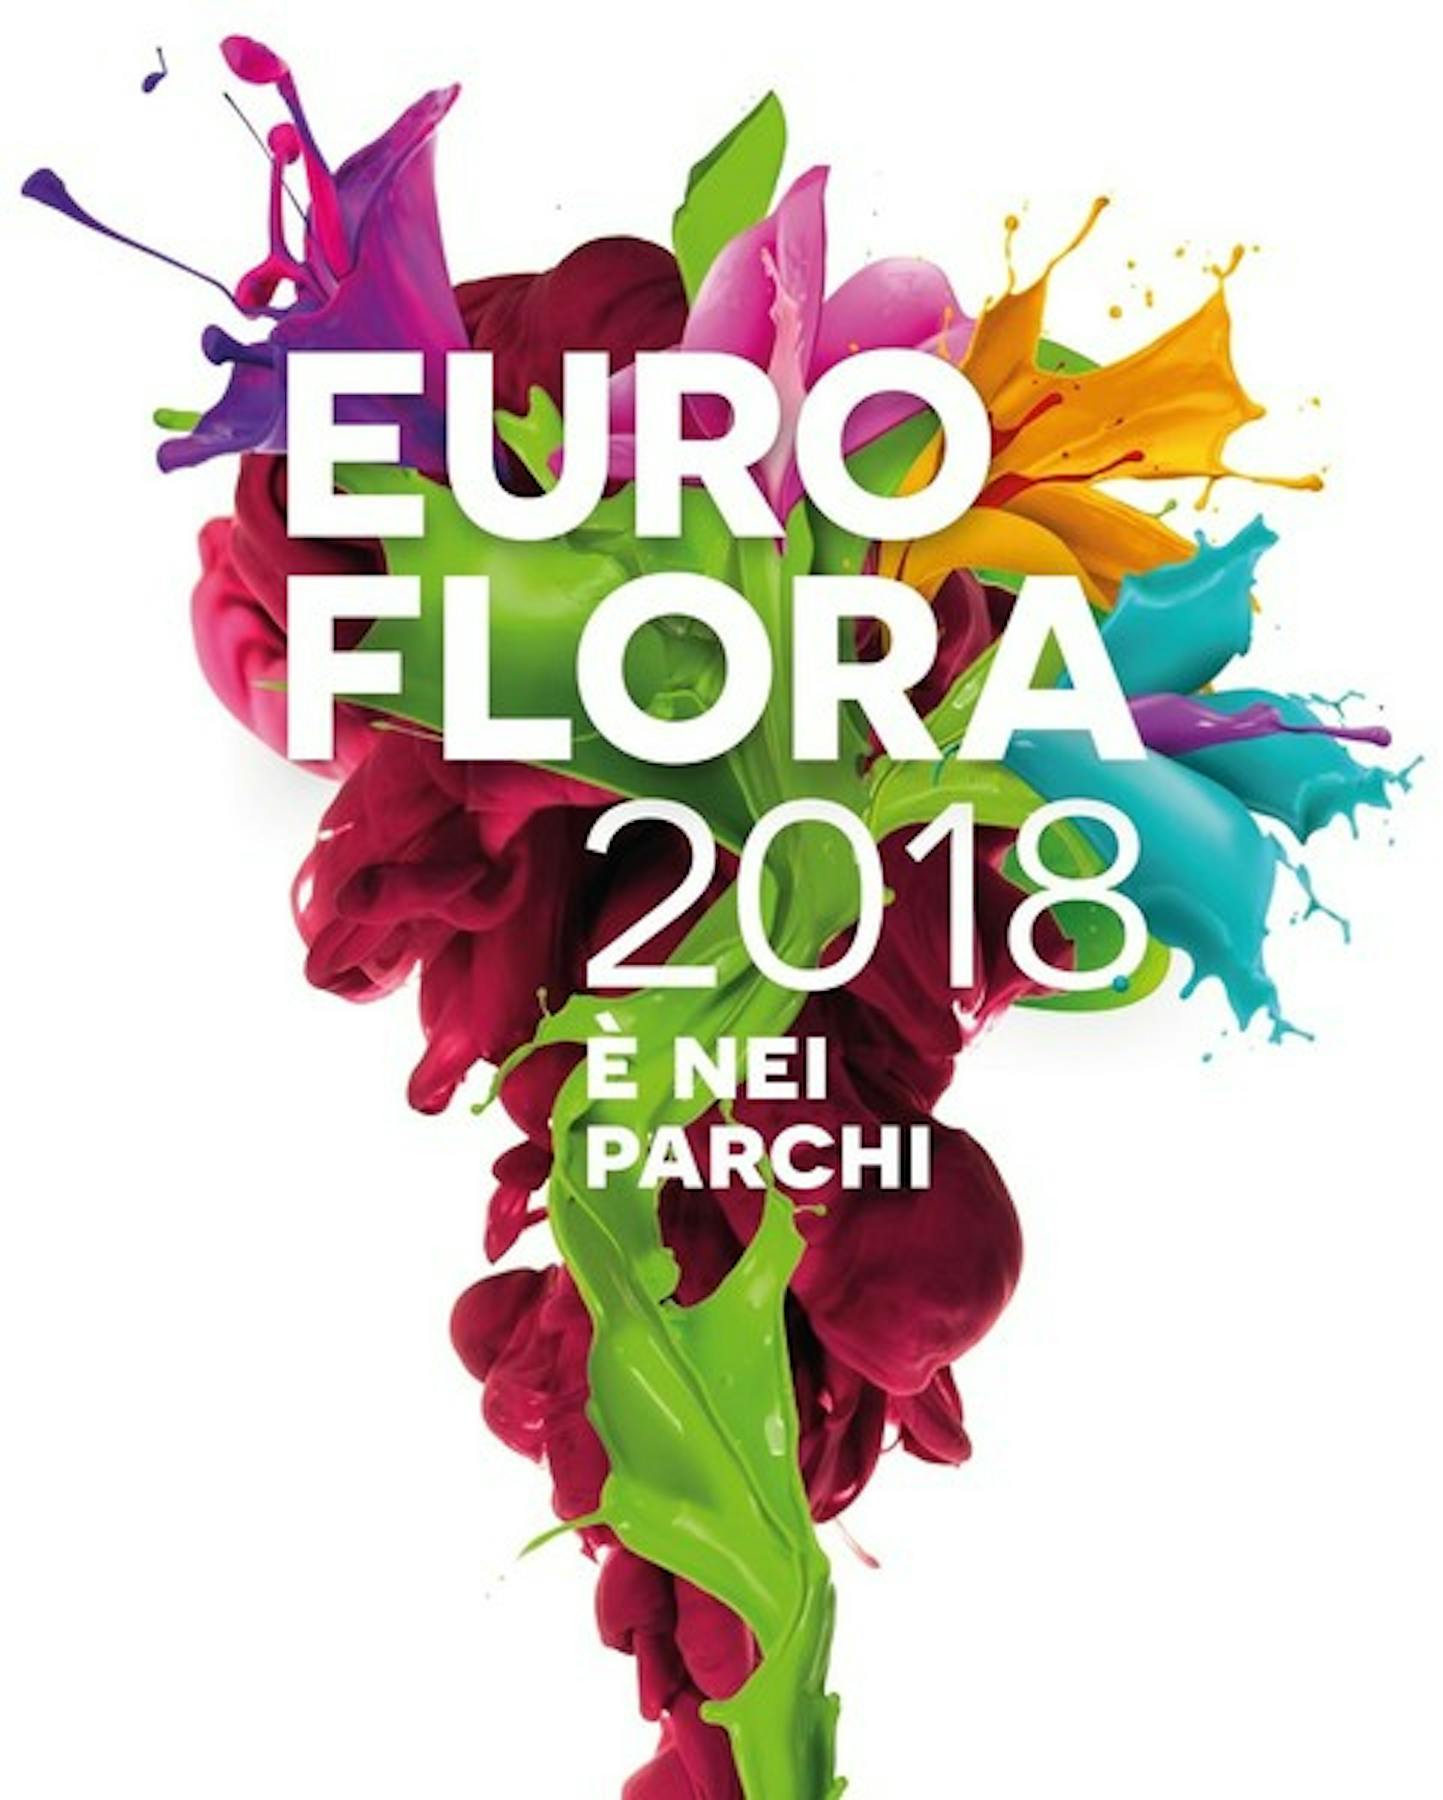 L’Orchidea dell’UNICEF riceve il “Premio della solidarietà” Euroflora 2018